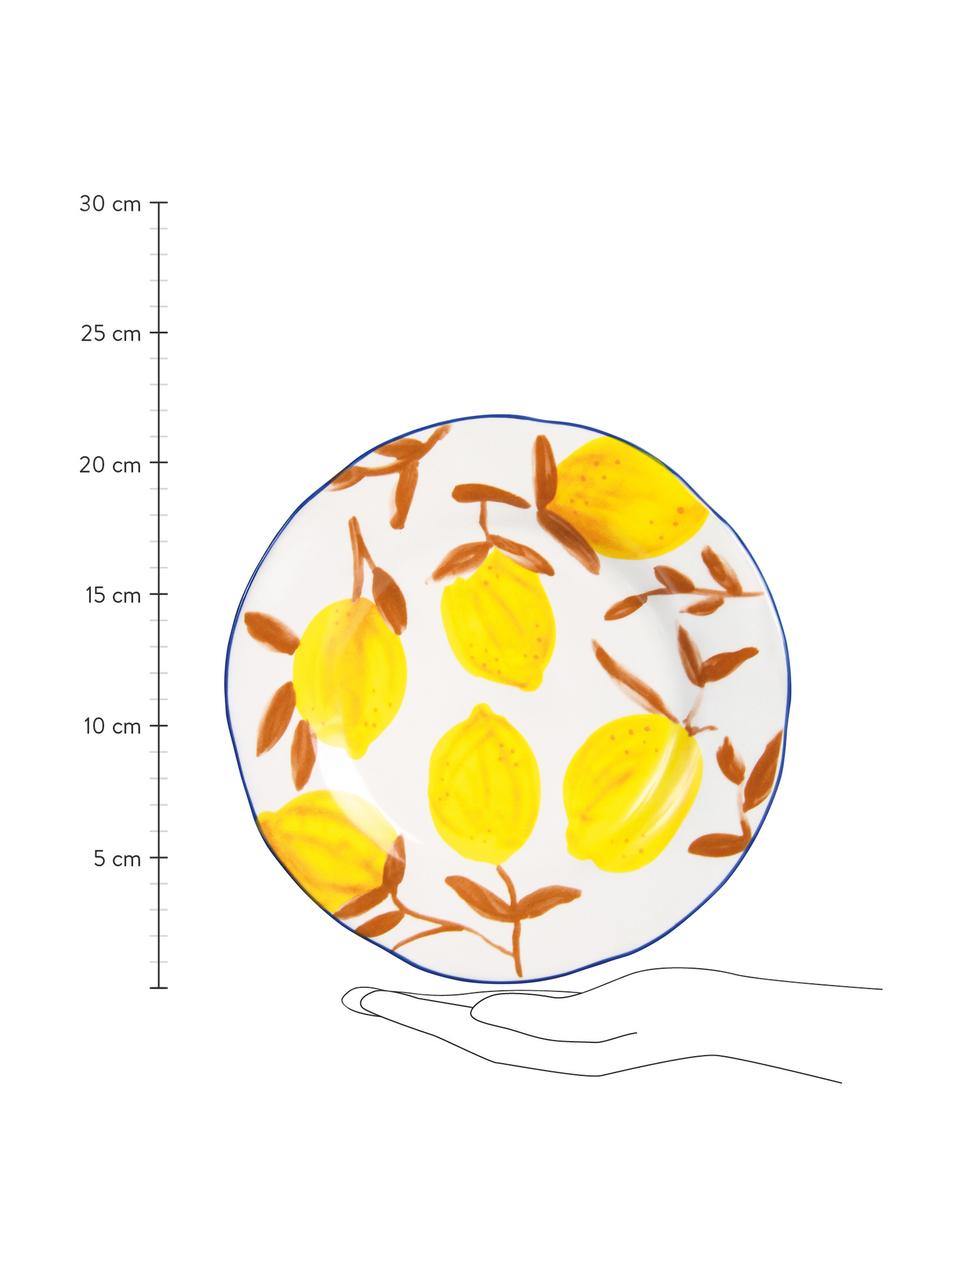 Fel beschilderd ontbijtbord Twig met citroenmotief, 4-delig, Keramiek, Multicolour, Ø 22 cm